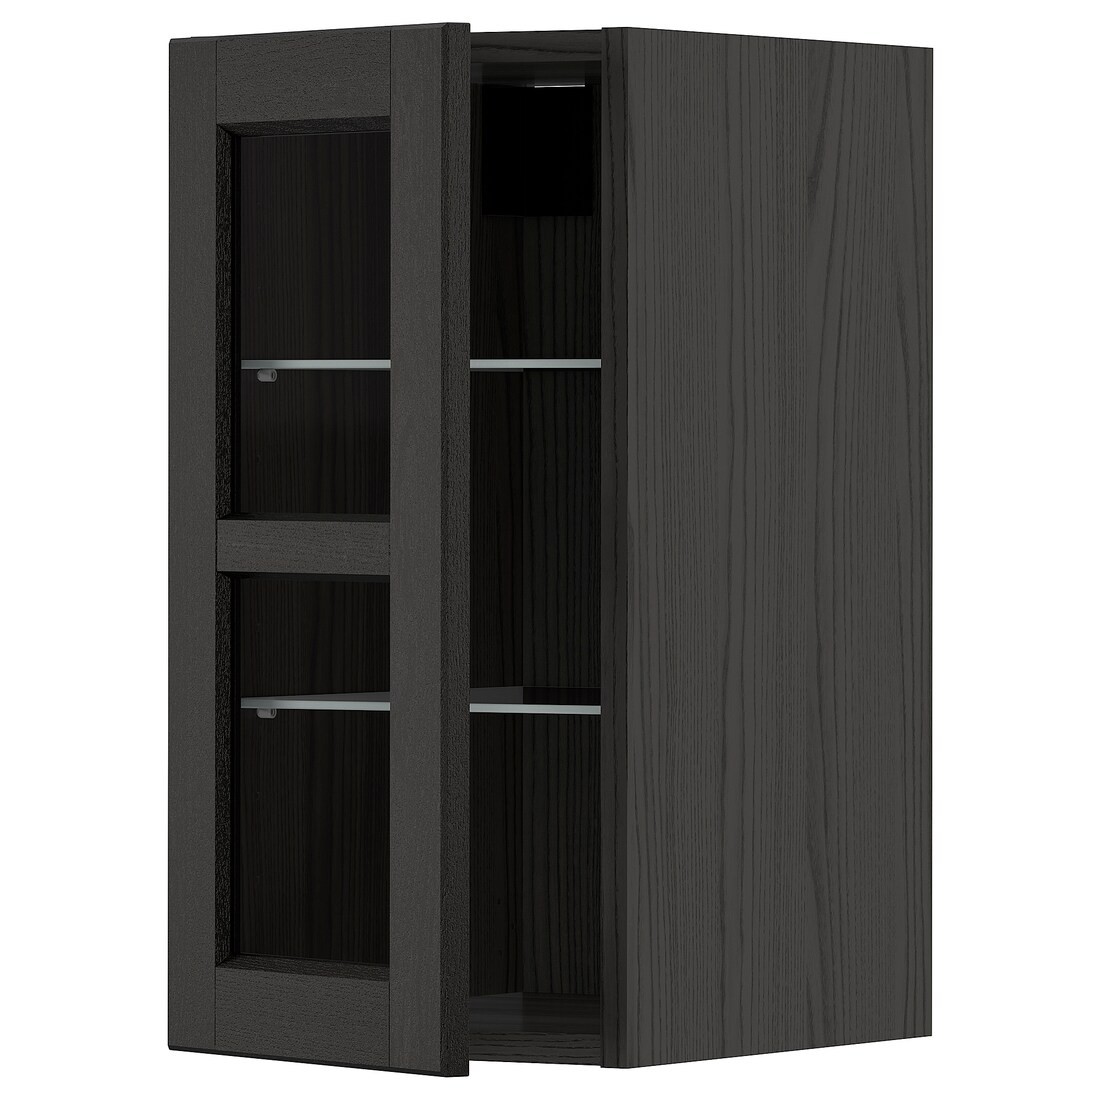 METOD МЕТОД Навесной шкаф, черный / Lerhyttan черная морилка, 30x60 см